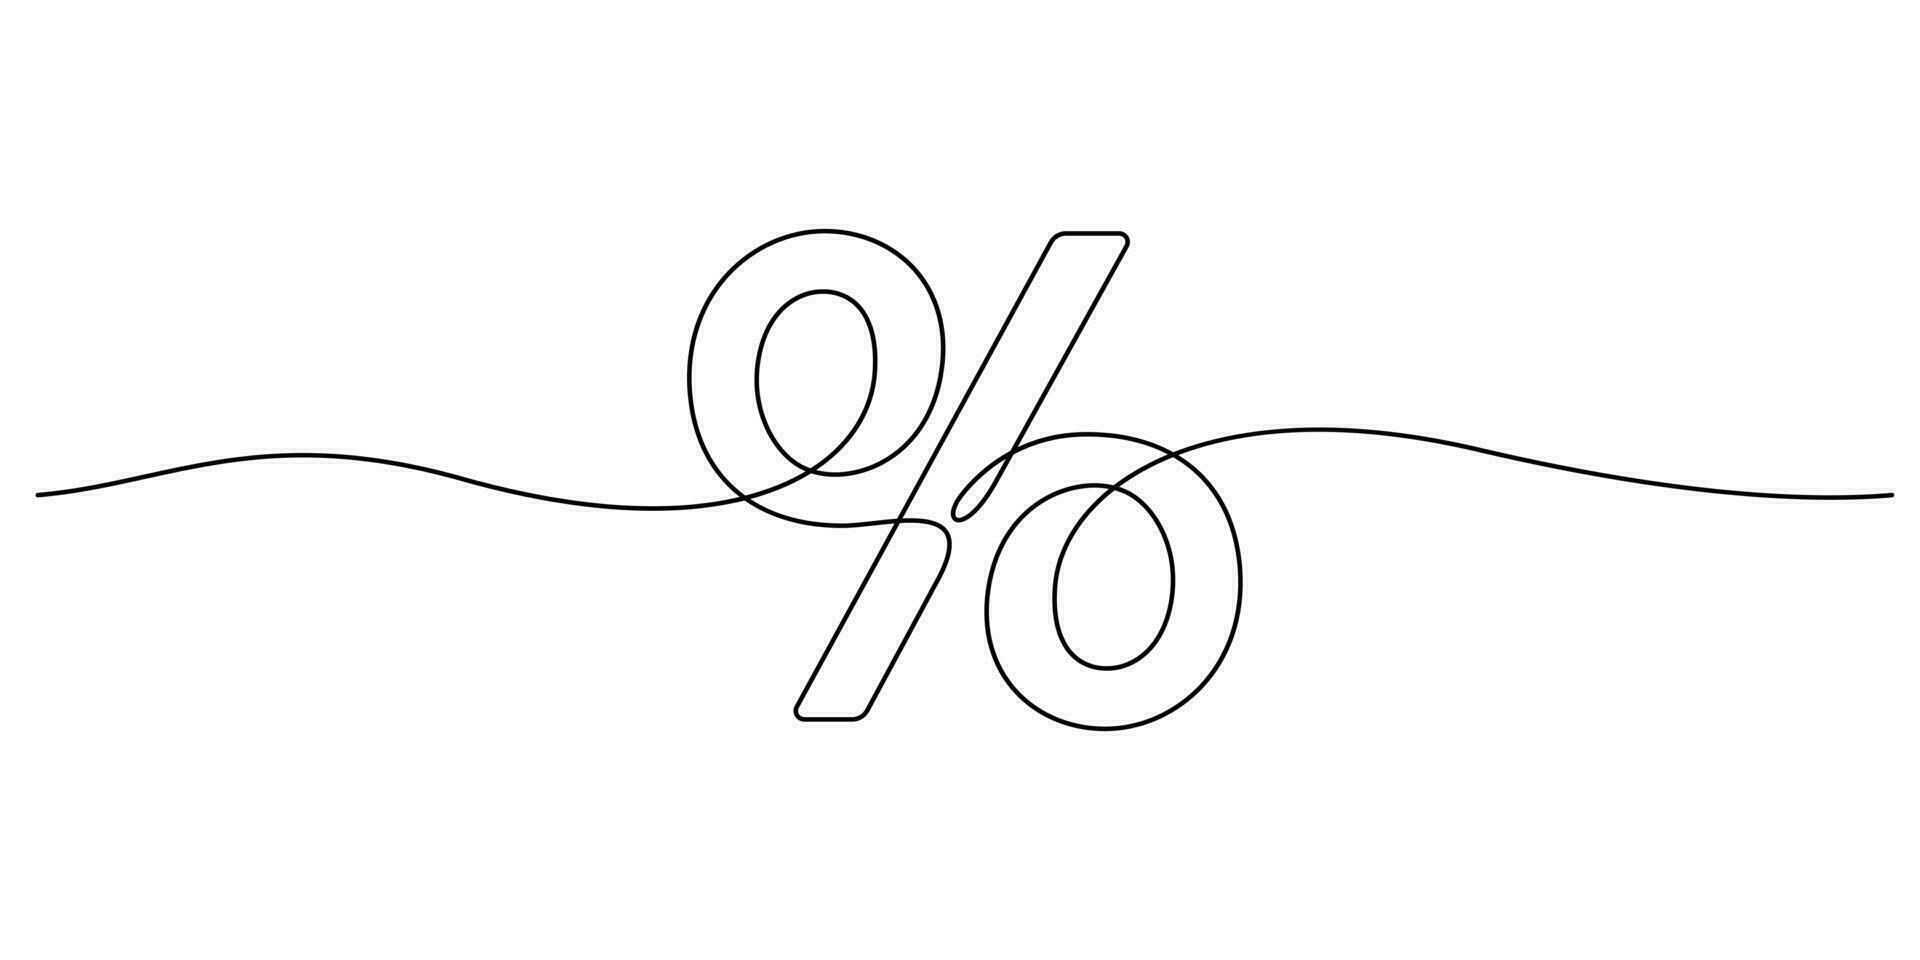 uno línea dibujo de por ciento símbolo minimalista estilo Delgado línea vector